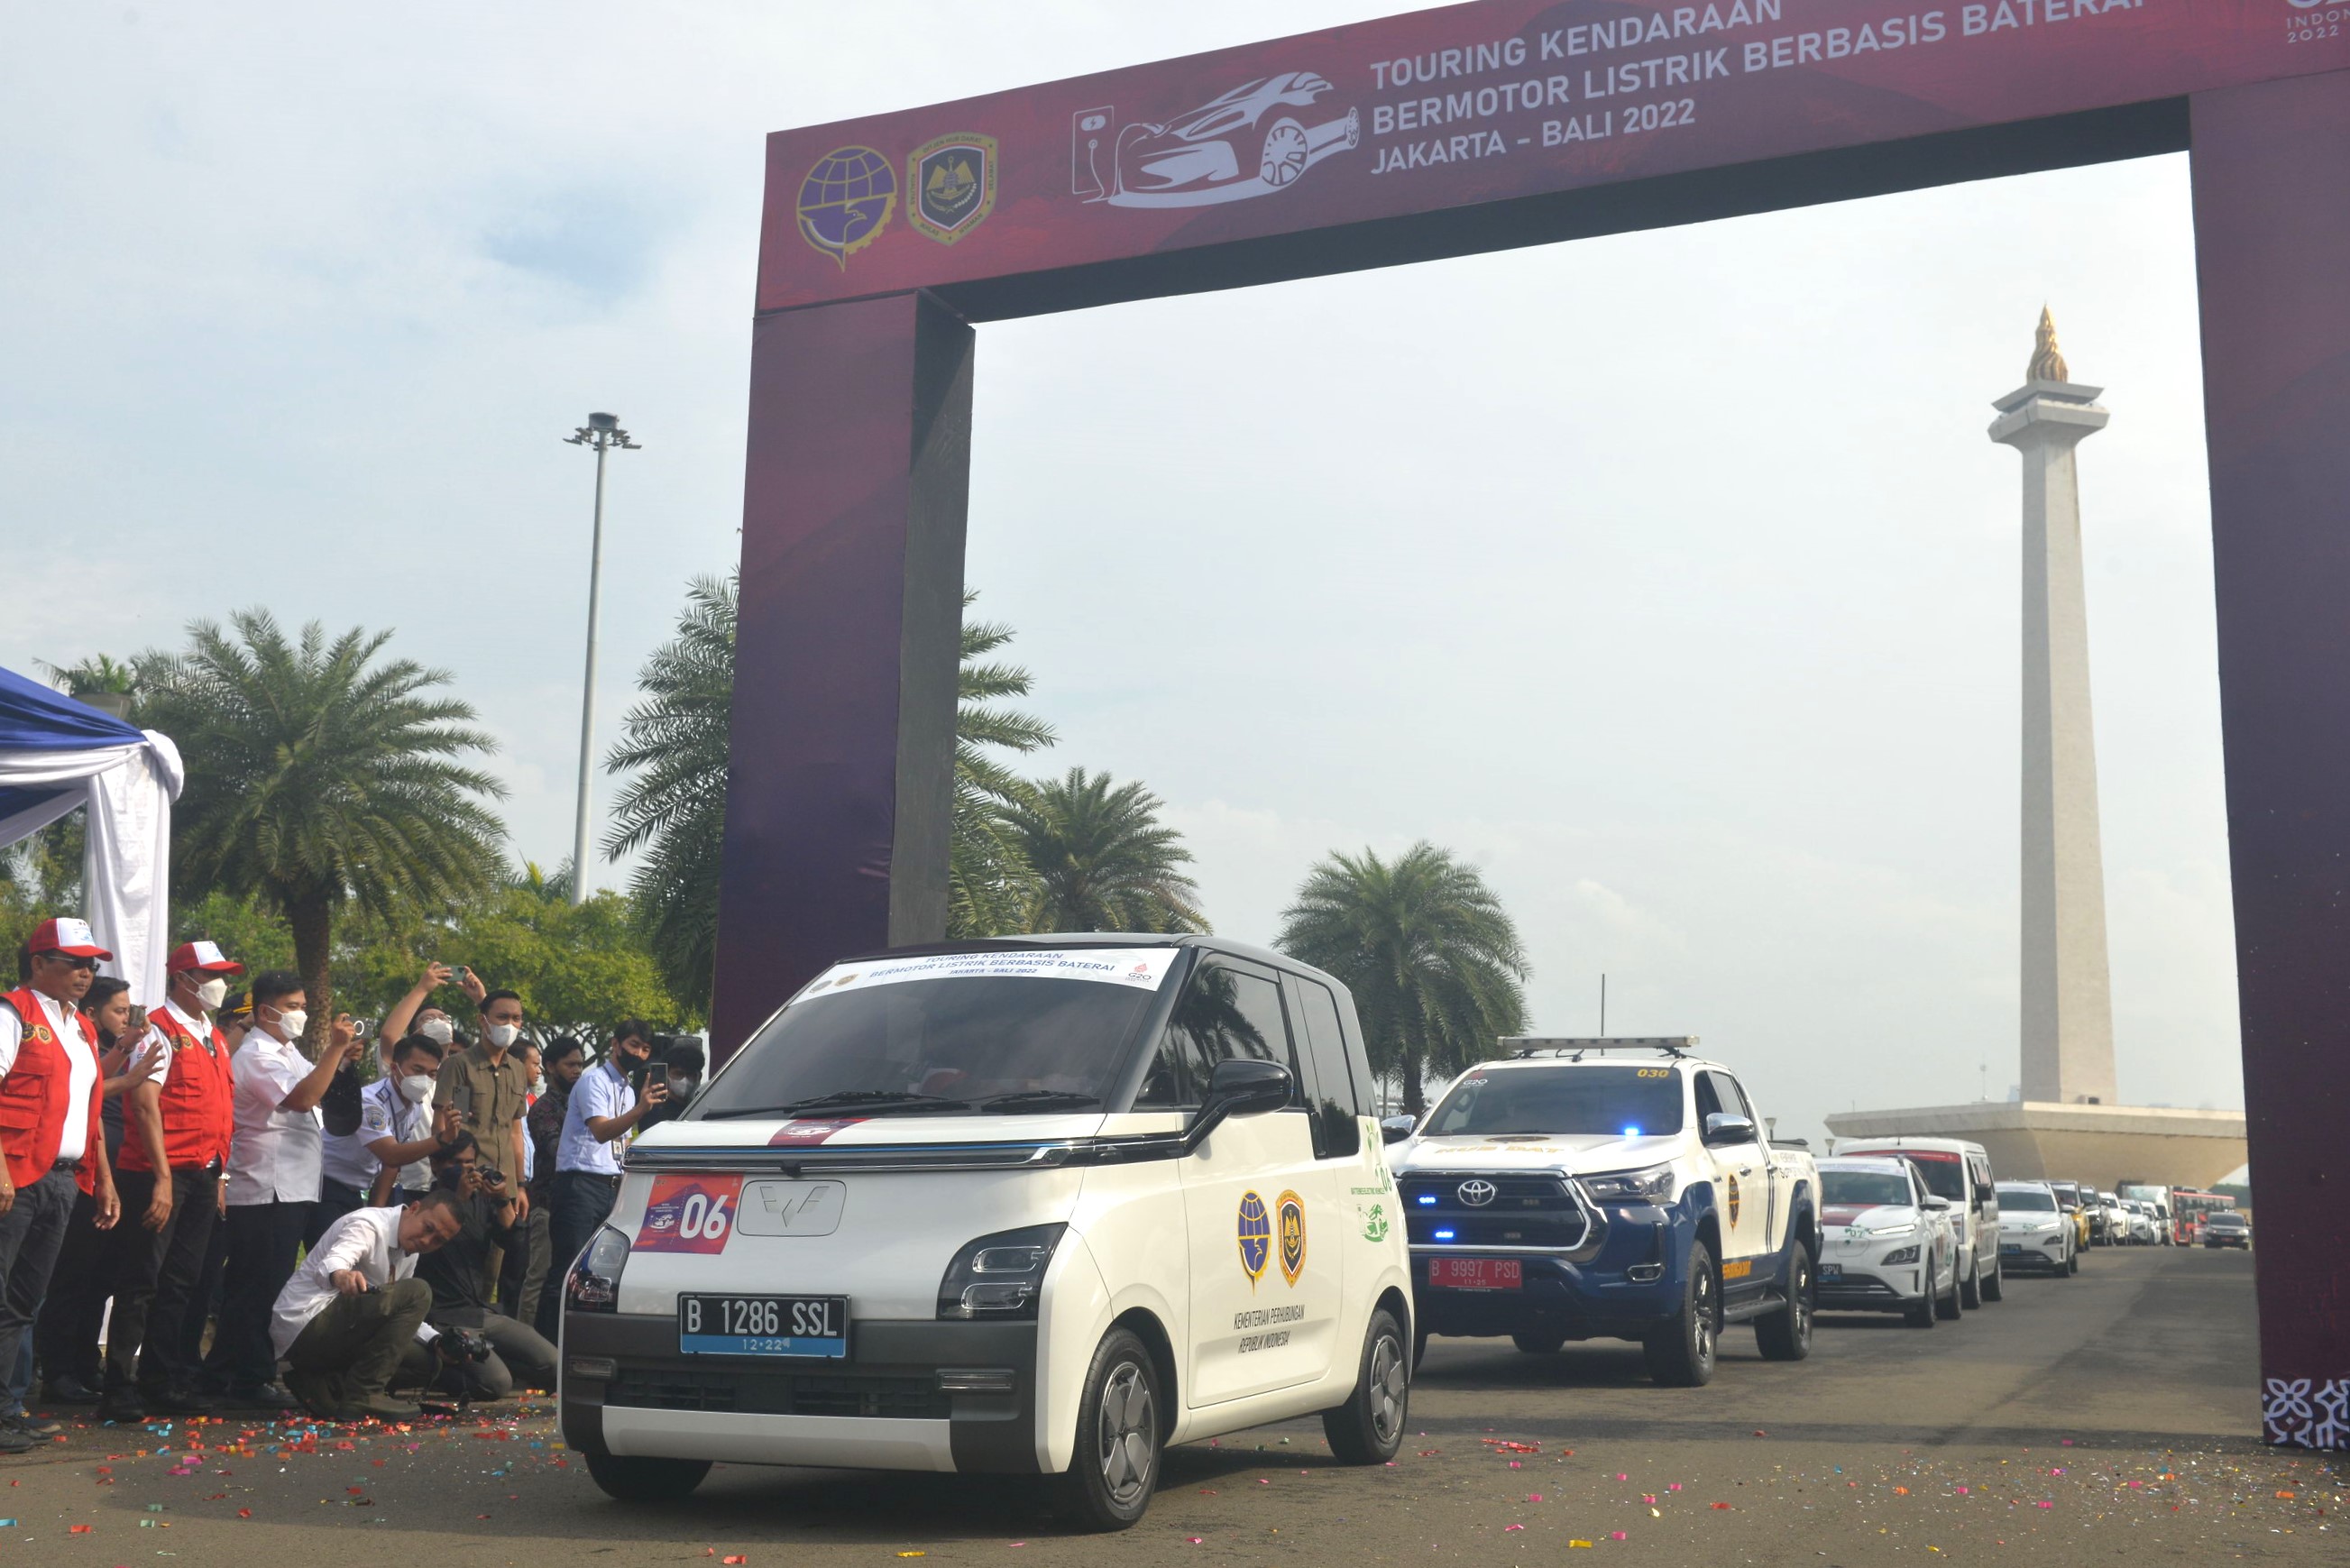 Image Wuling Berpartisipasi dalam Touring Kendaraan Bermotor Listrik Berbasis Baterai Jakarta-Bali 2022